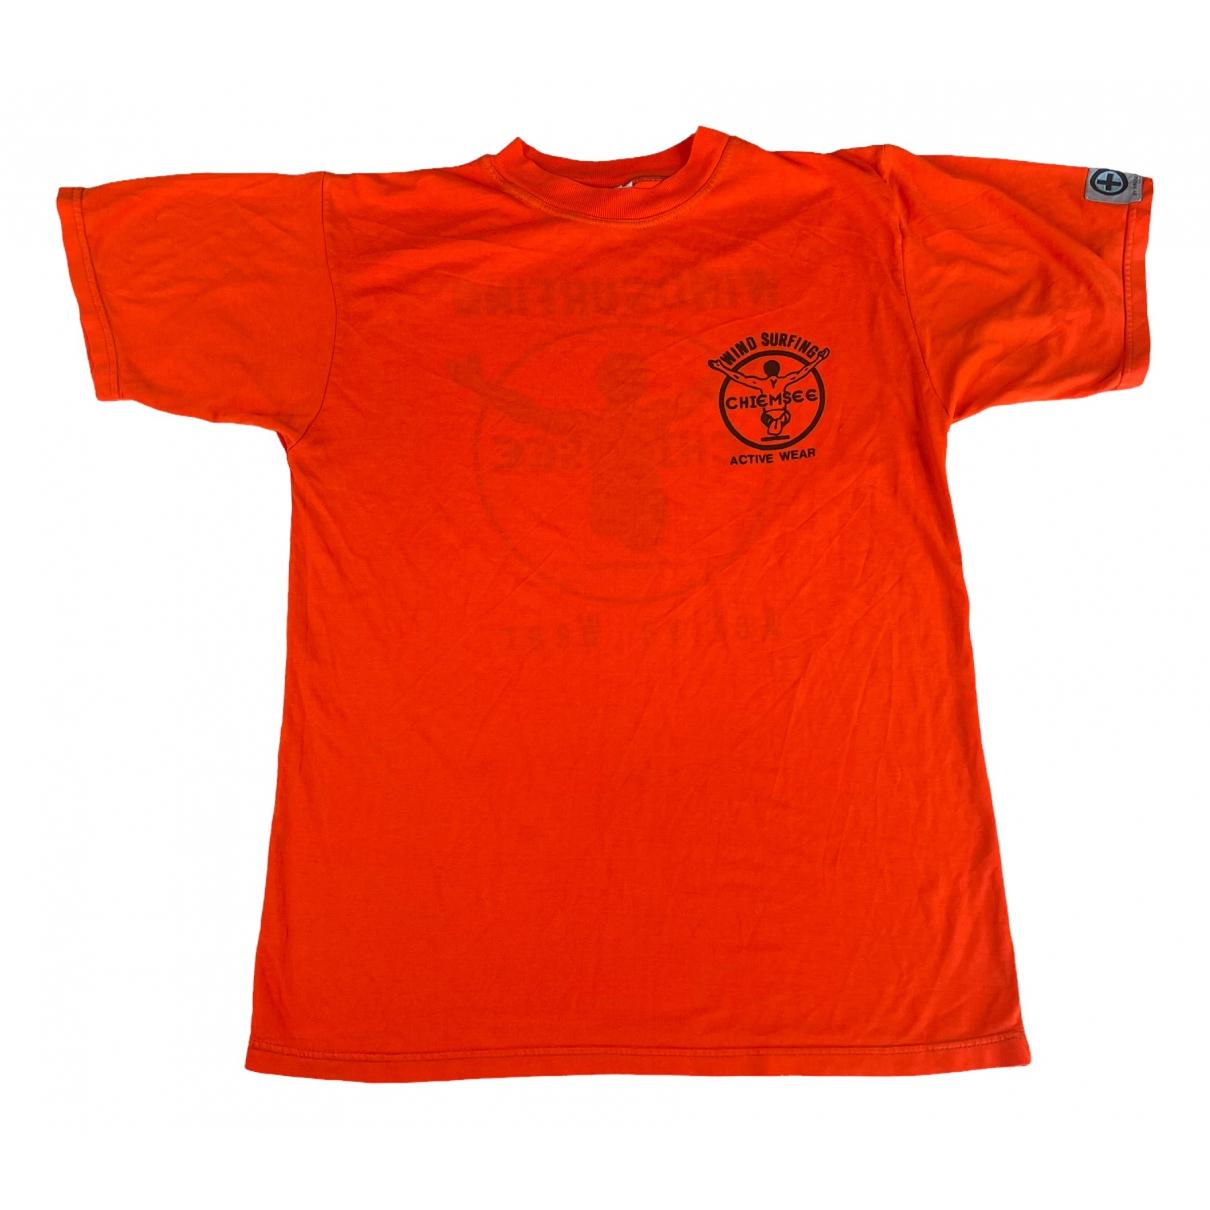 T-shirt Chiemsee Orange size M International in Cotton - 23126852